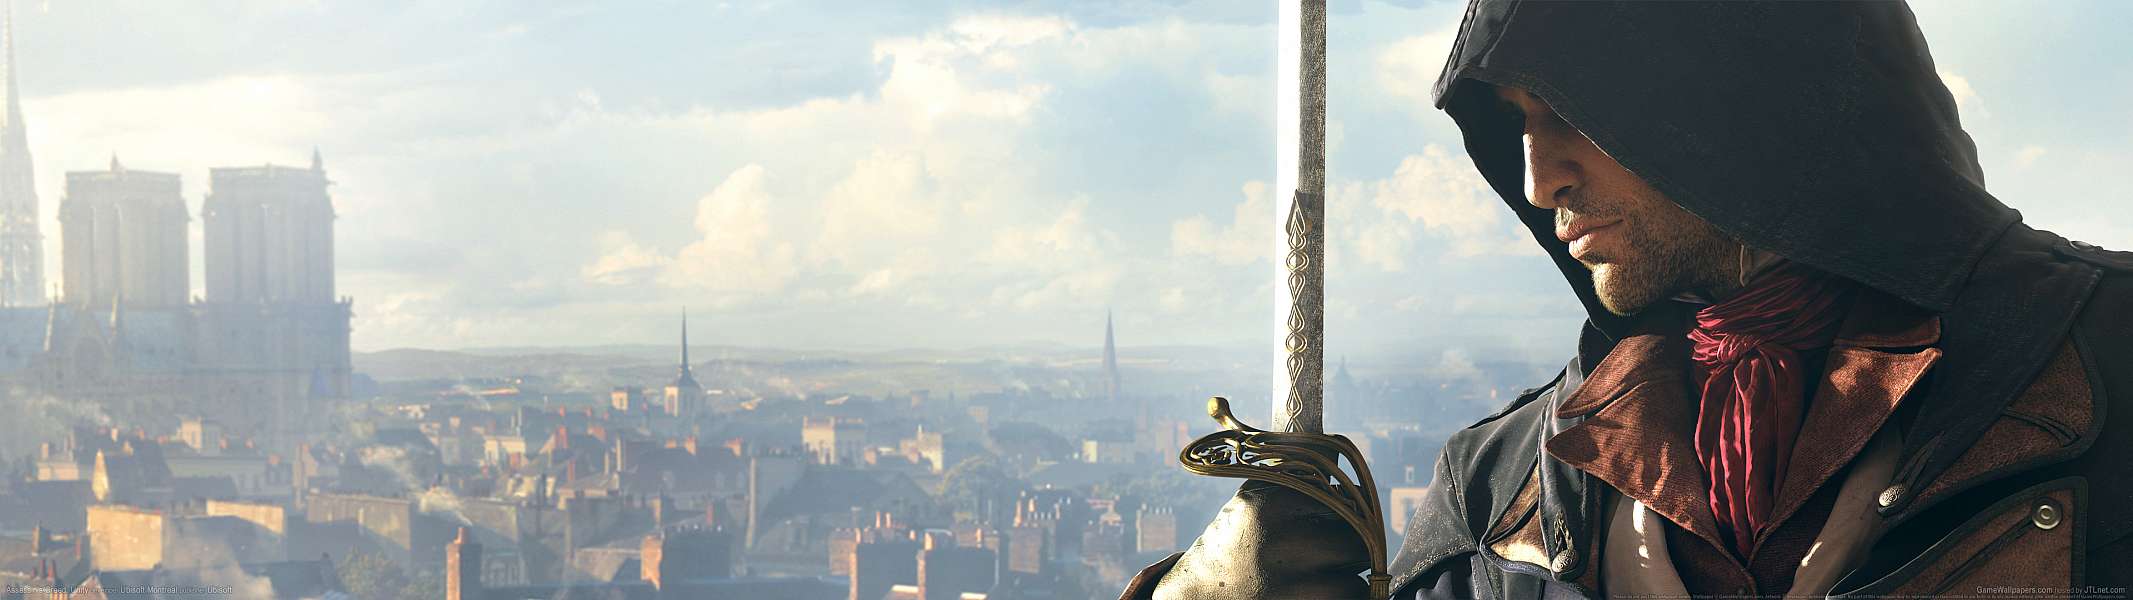 Assassin's Creed: Unity dual screen fond d'cran